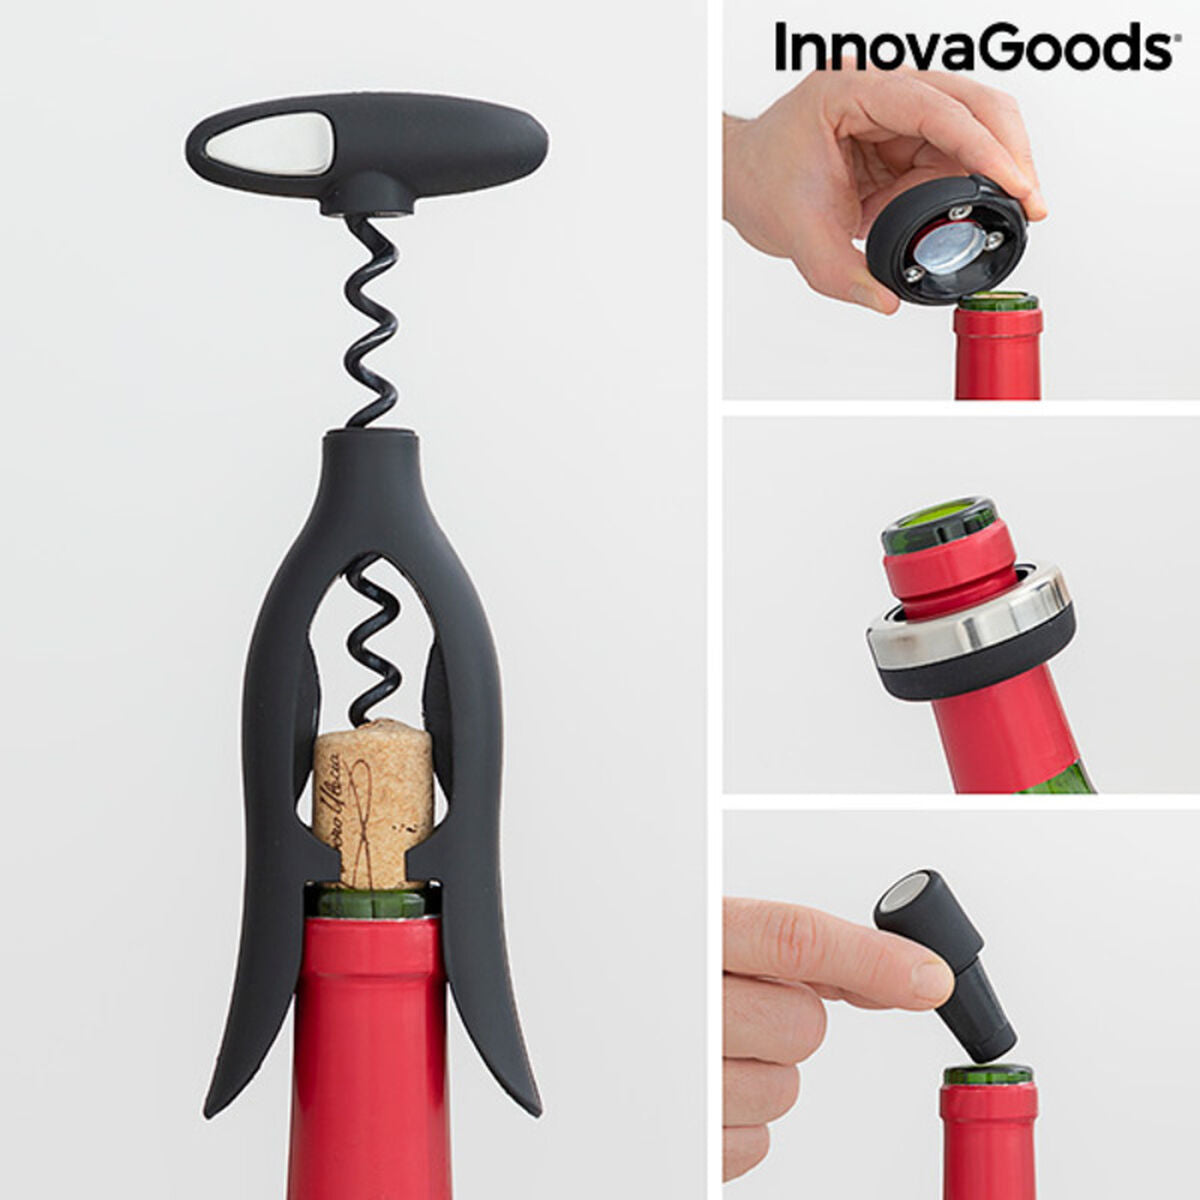 Wijnset met spiraalvormige kurkentrekker en accessoires Vinstand InnovaGoods 5 Onderdelen